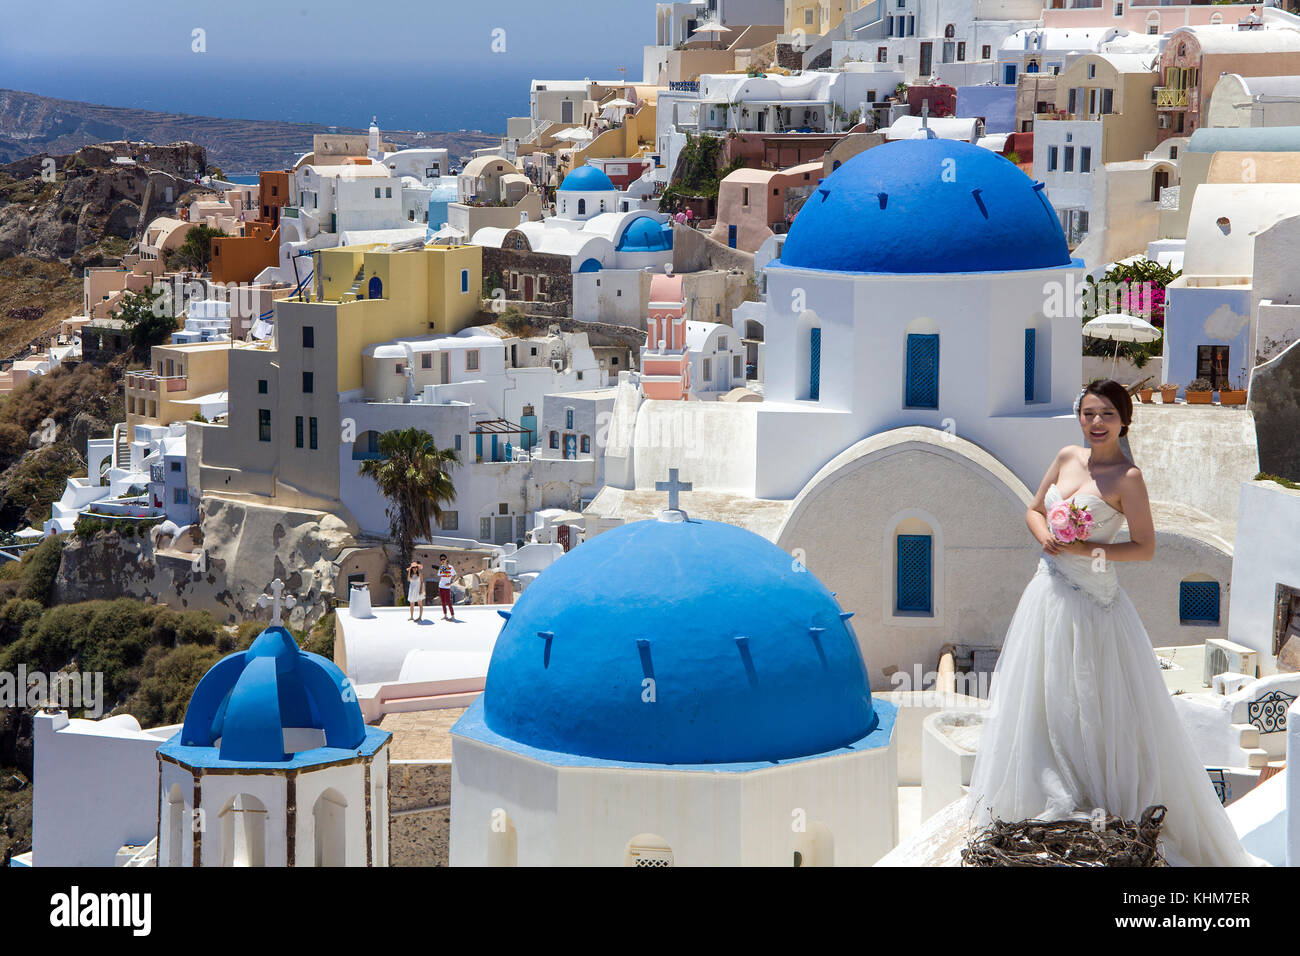 Bridal alla chiesa ortodossa, famoso spot foto presso il villaggio di Oia, isola di Santorini, Cicladi, Egeo, Grecia Foto Stock